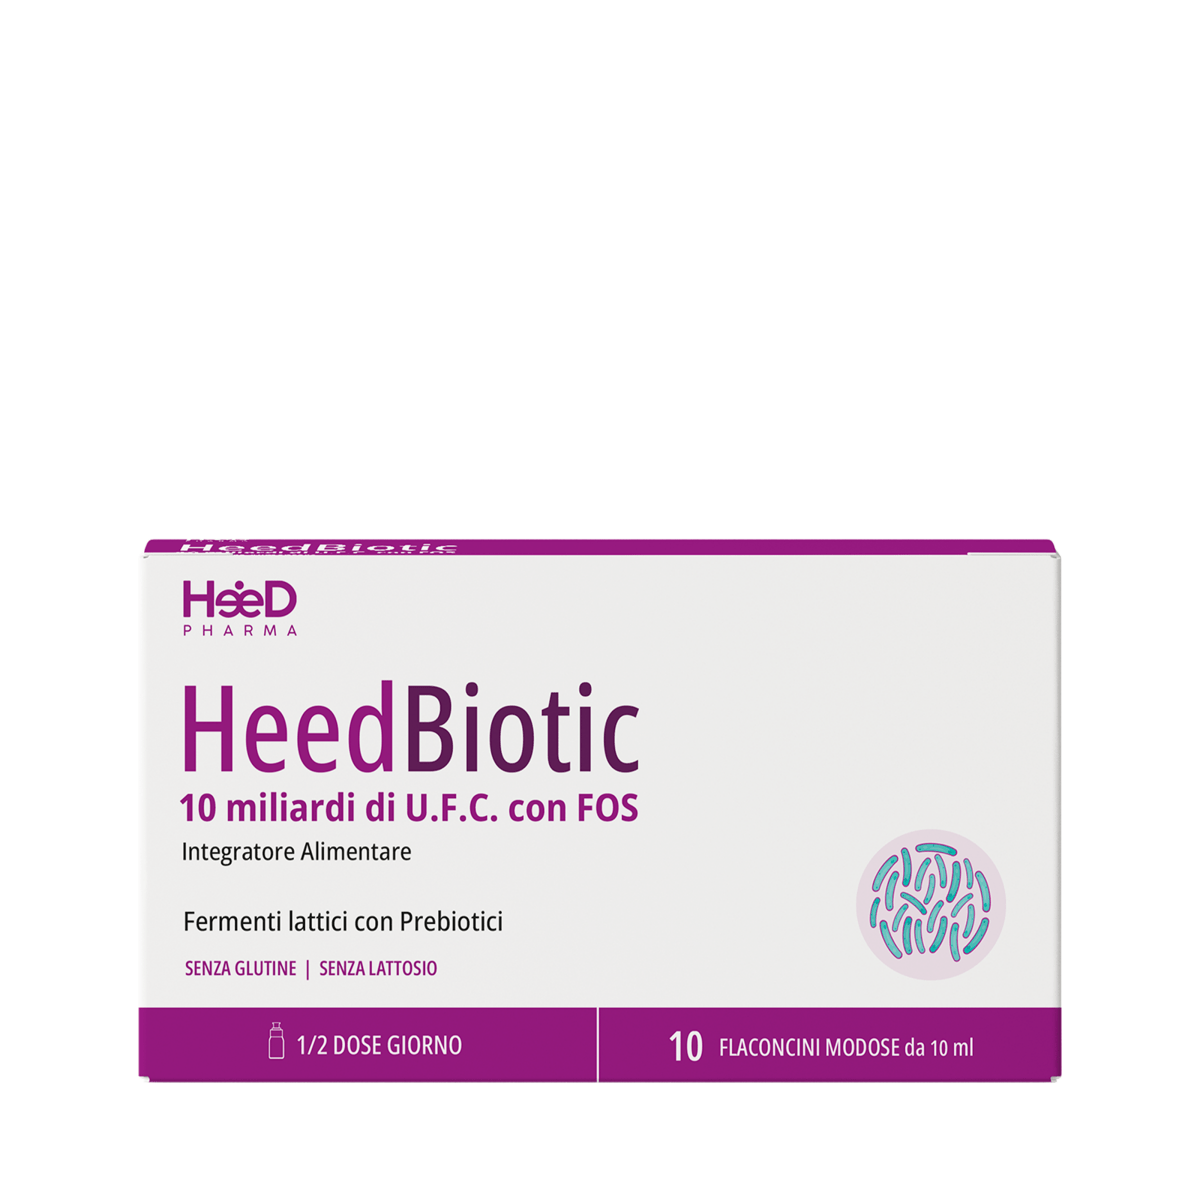 HeedBiotic - Heed Pharma | Cura il Tuo BenessereHeedBiotic